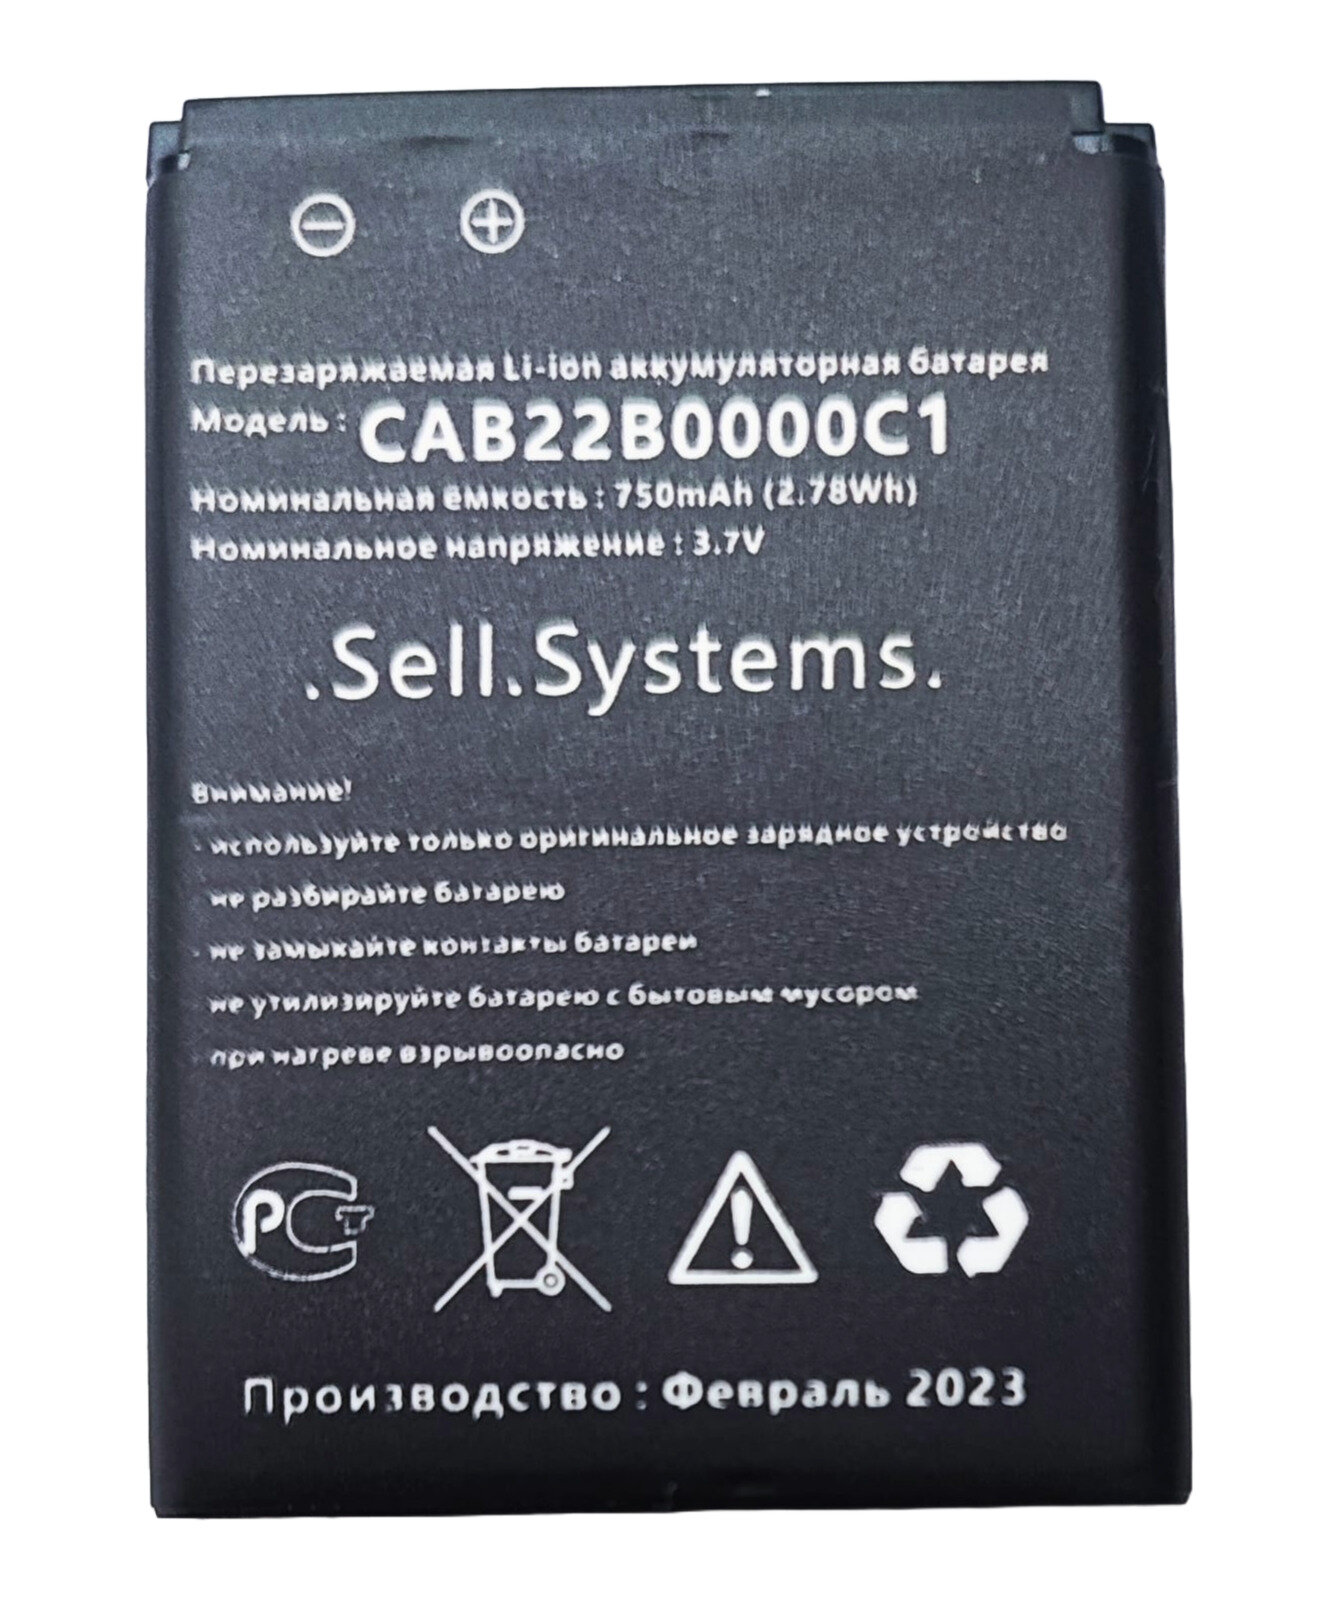 Аккумулятор CAB22B0000C1 для телефона Alcatel One Touch 1008, 1010D, 1010X, 1030D, 665X и OT-665X и др, см. в описании